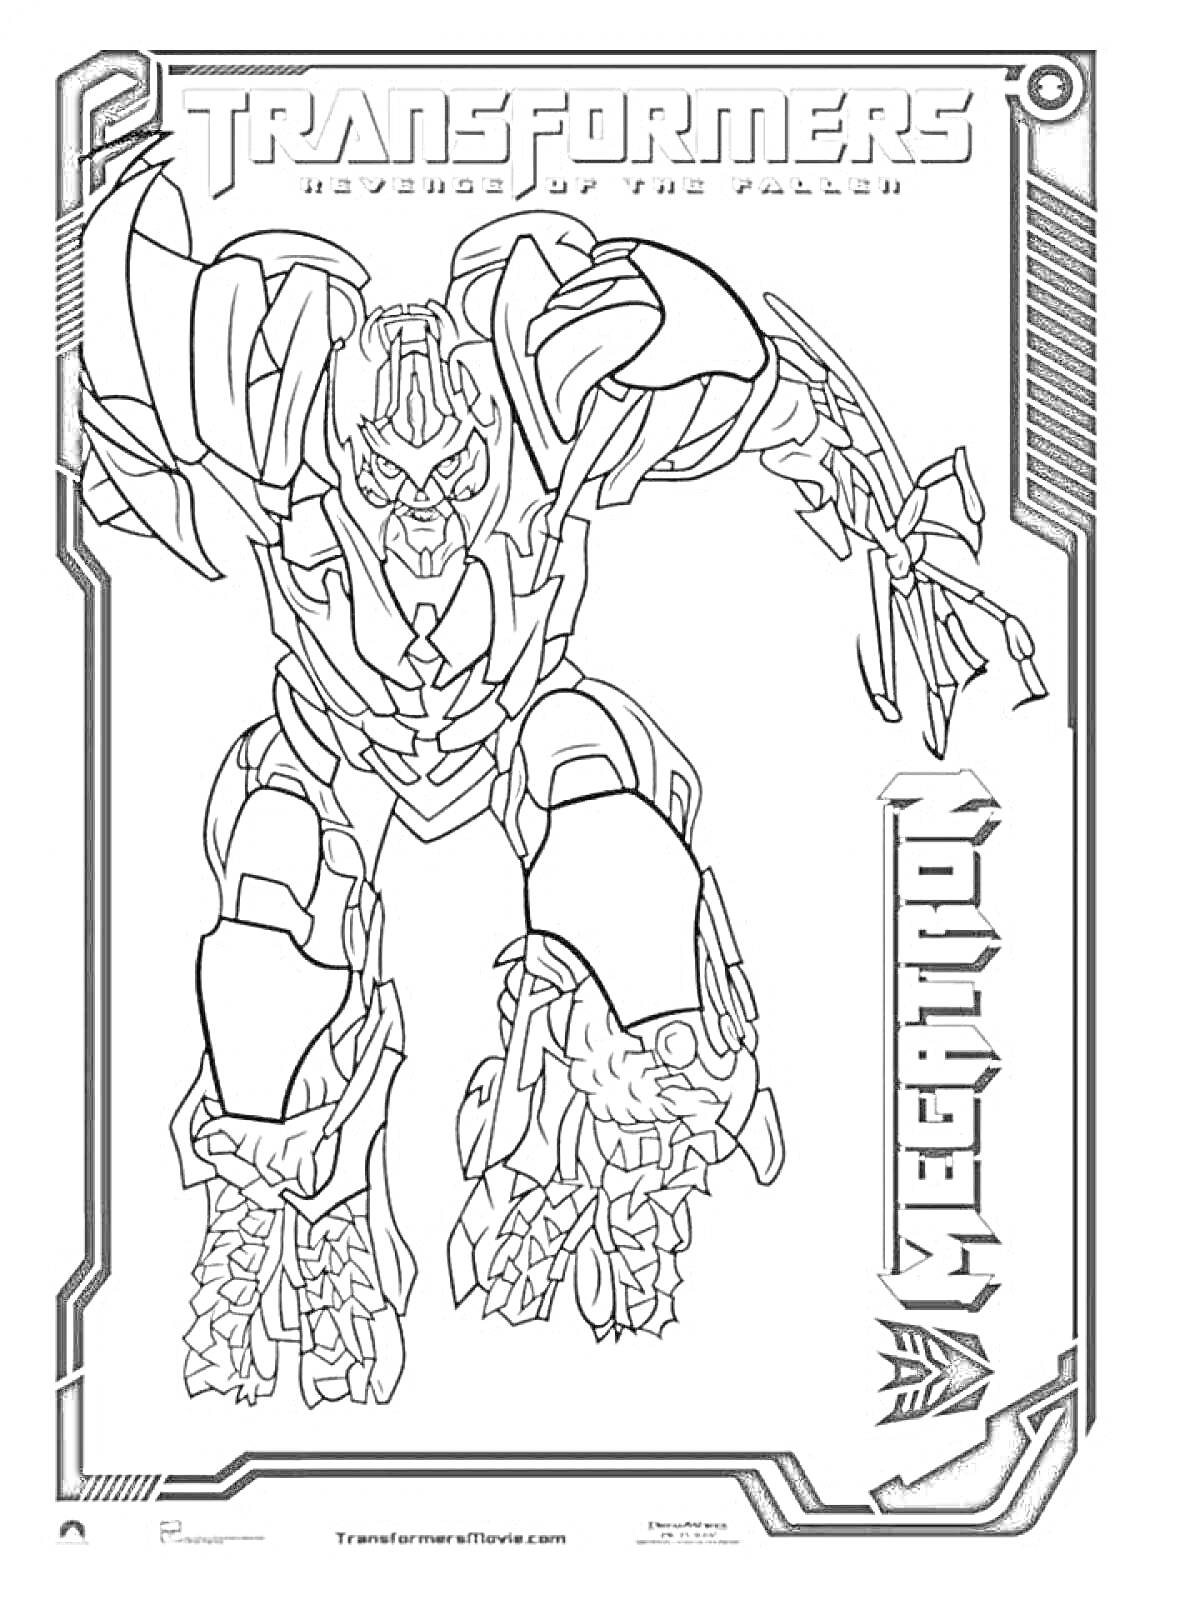 Раскраска Мегатрон из фильма «Трансформеры: Месть падших», в боевой позе с поднятой левой рукой, название серии и персонажа